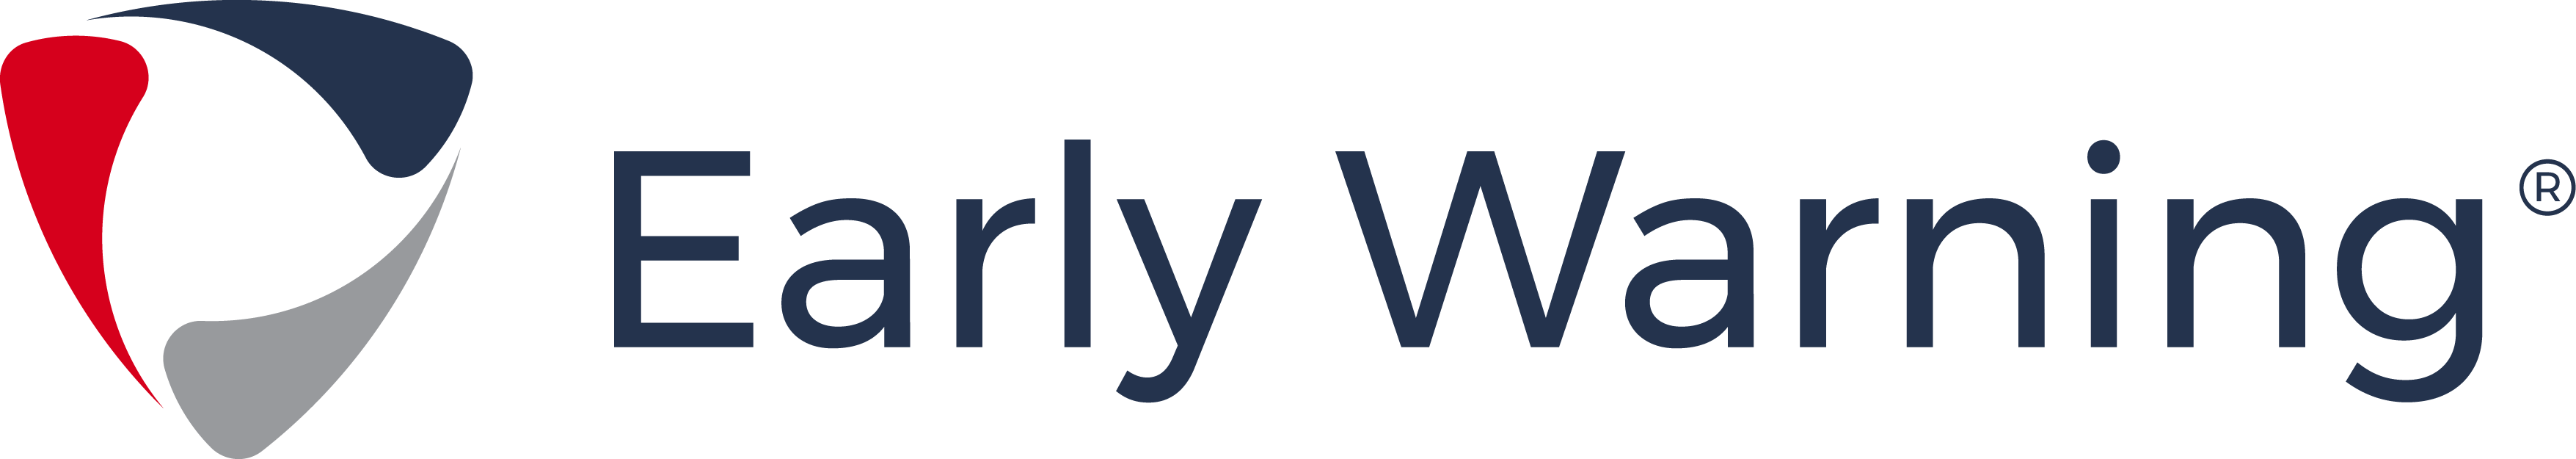 ews logo